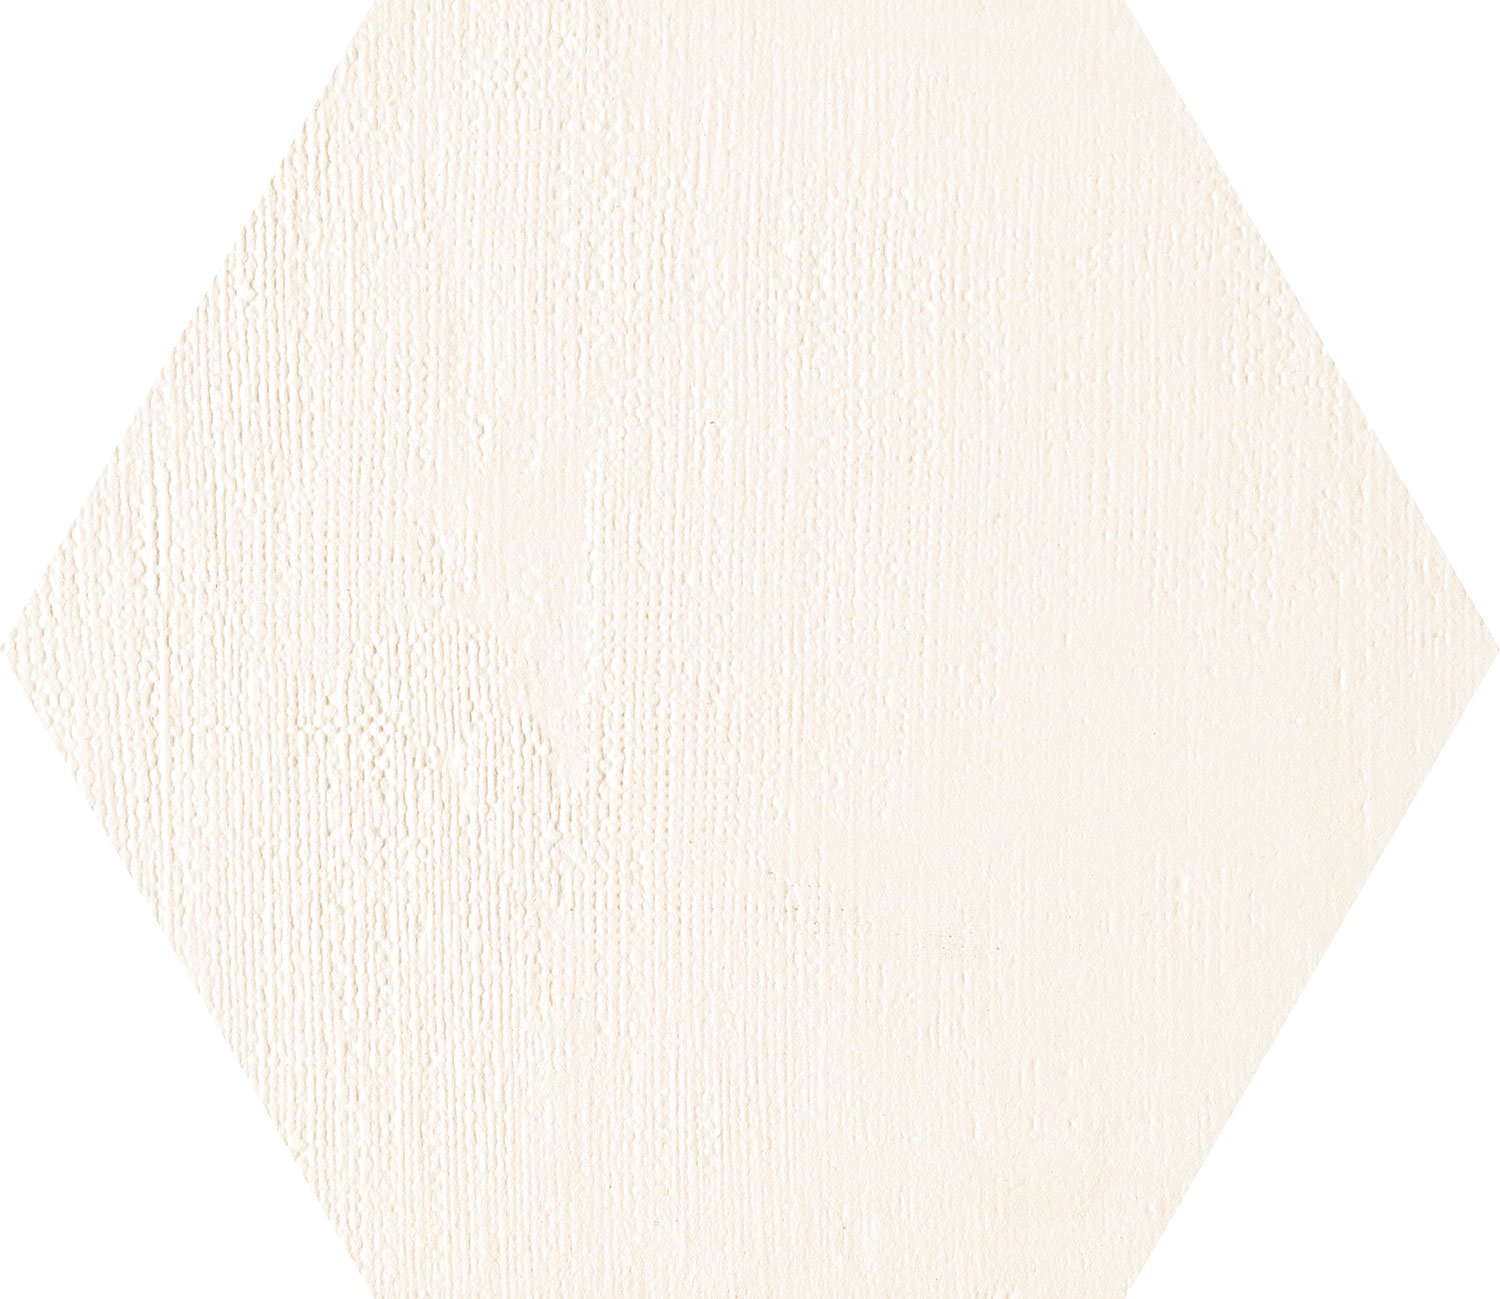 Mild Garden white hex dekor scienny - obkládačka inzerto šestihran 19,2x22,1 bílá 6004878